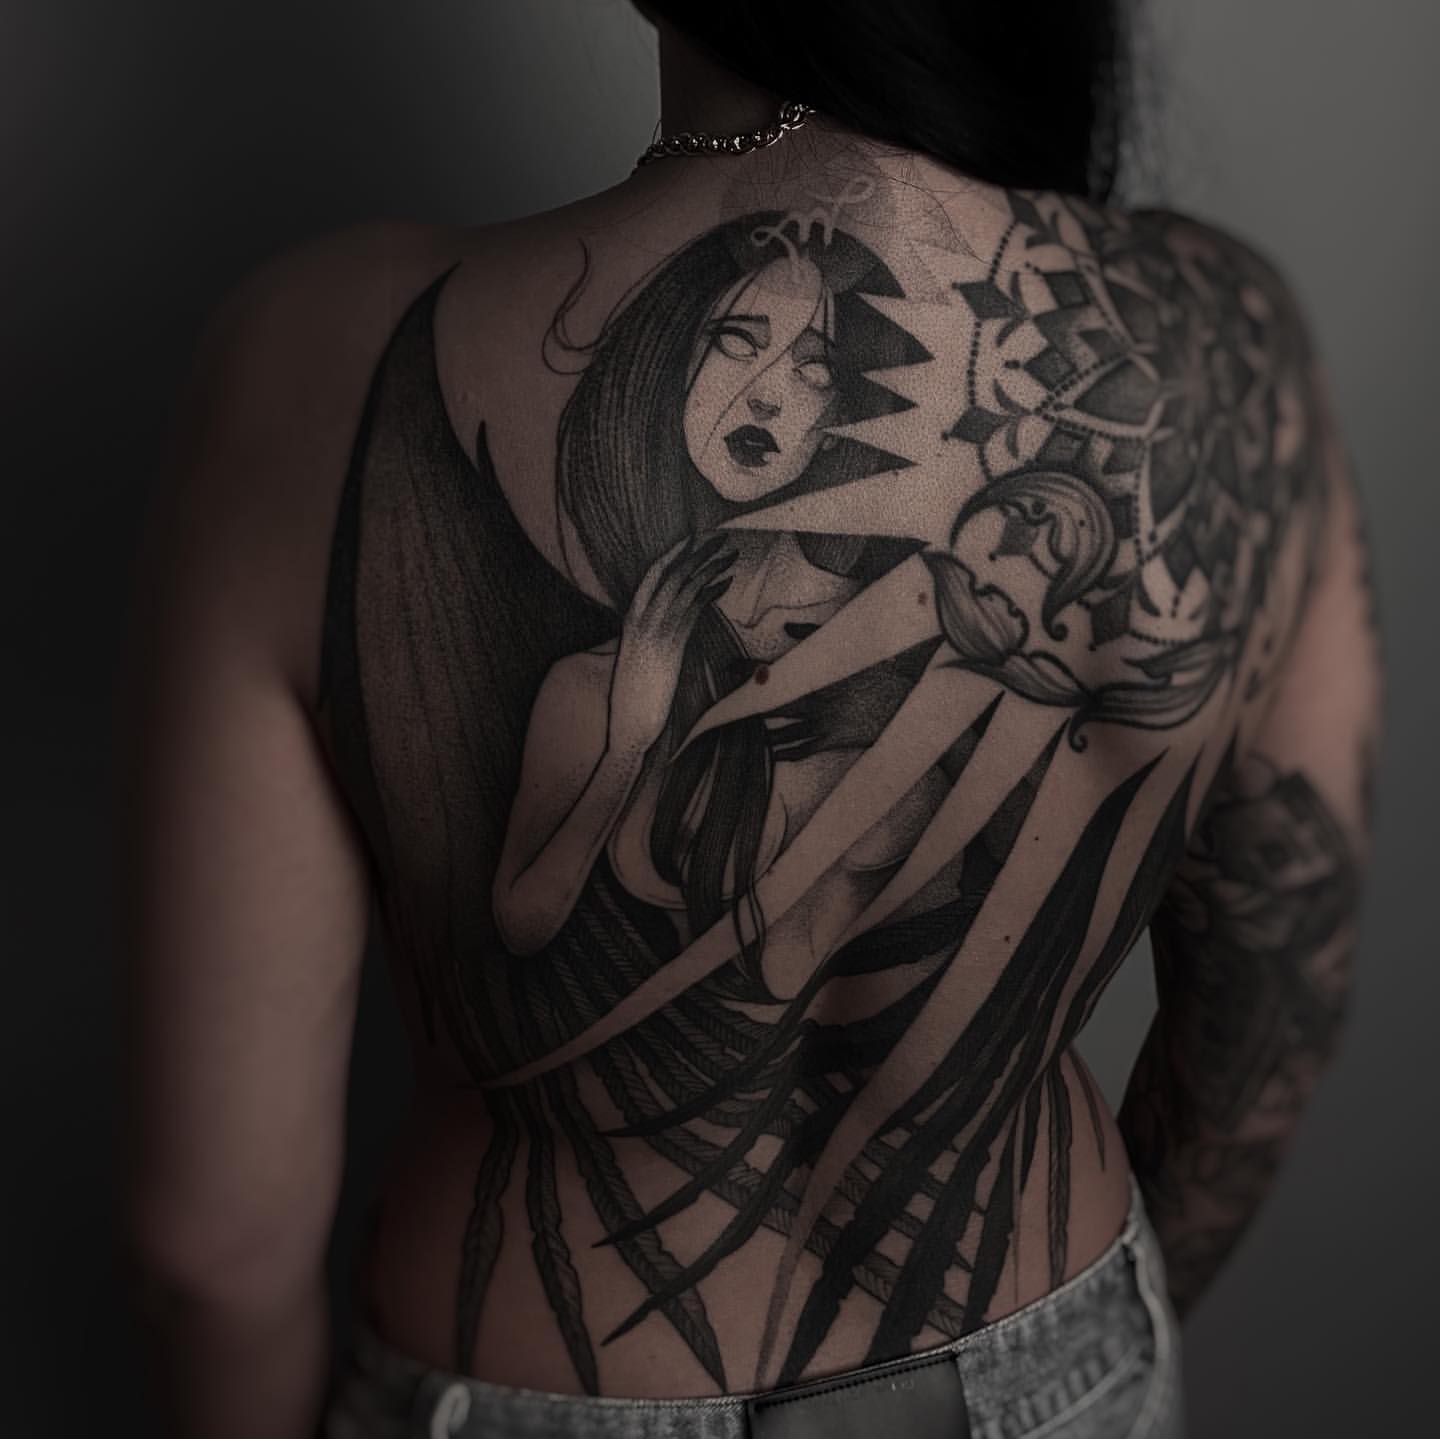 Full Back Tattoos for Women 21